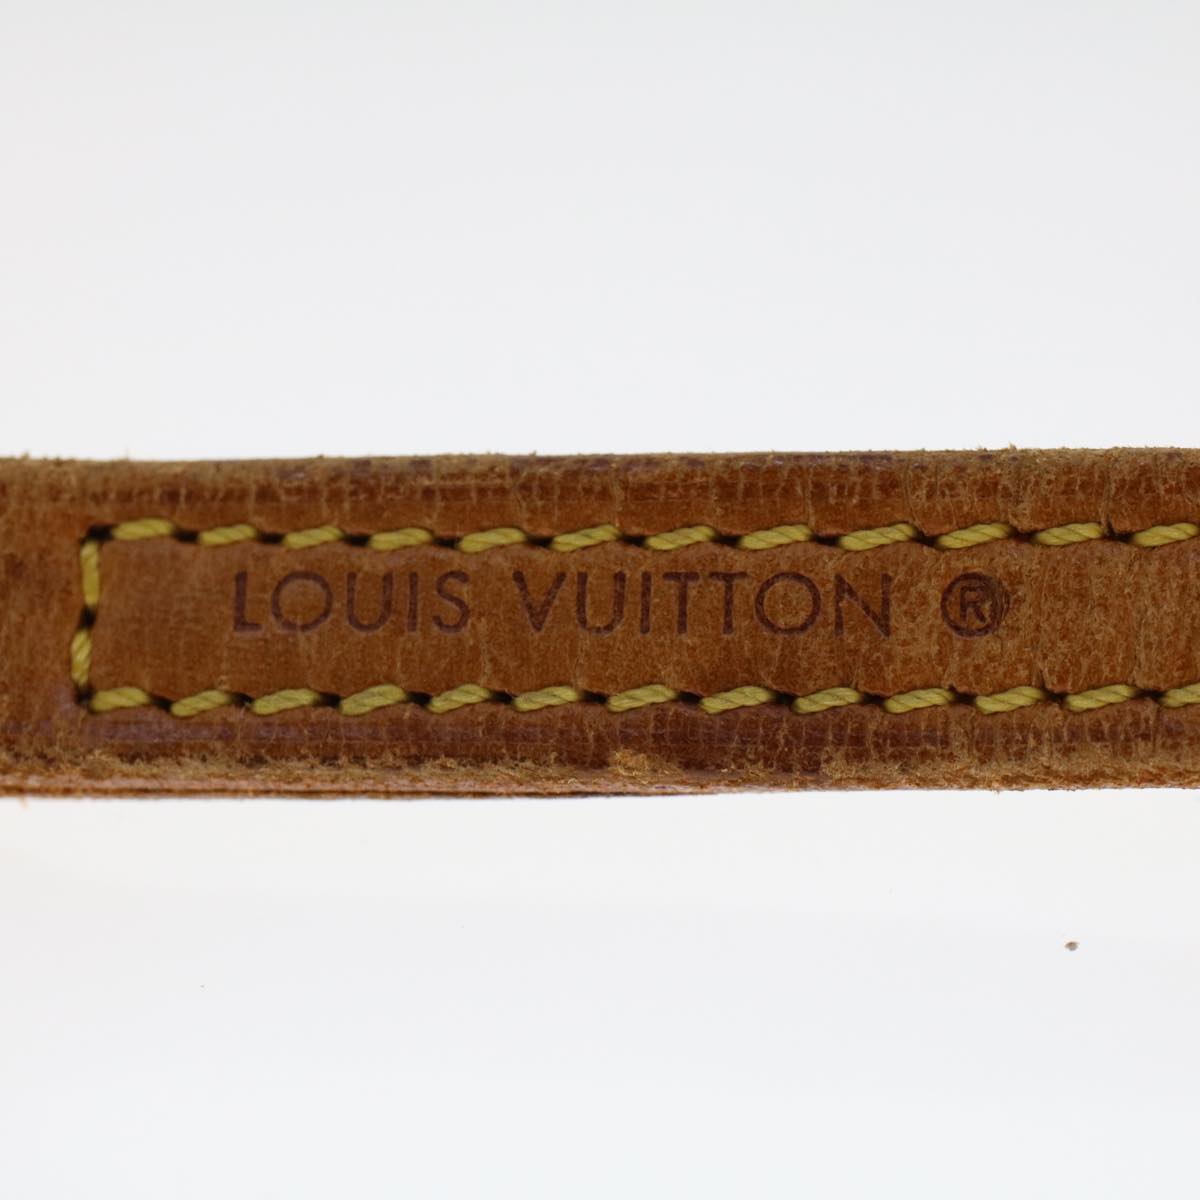 LOUIS VUITTON Shoulder Strap Leather 46.1"" Beige LV Auth 48478